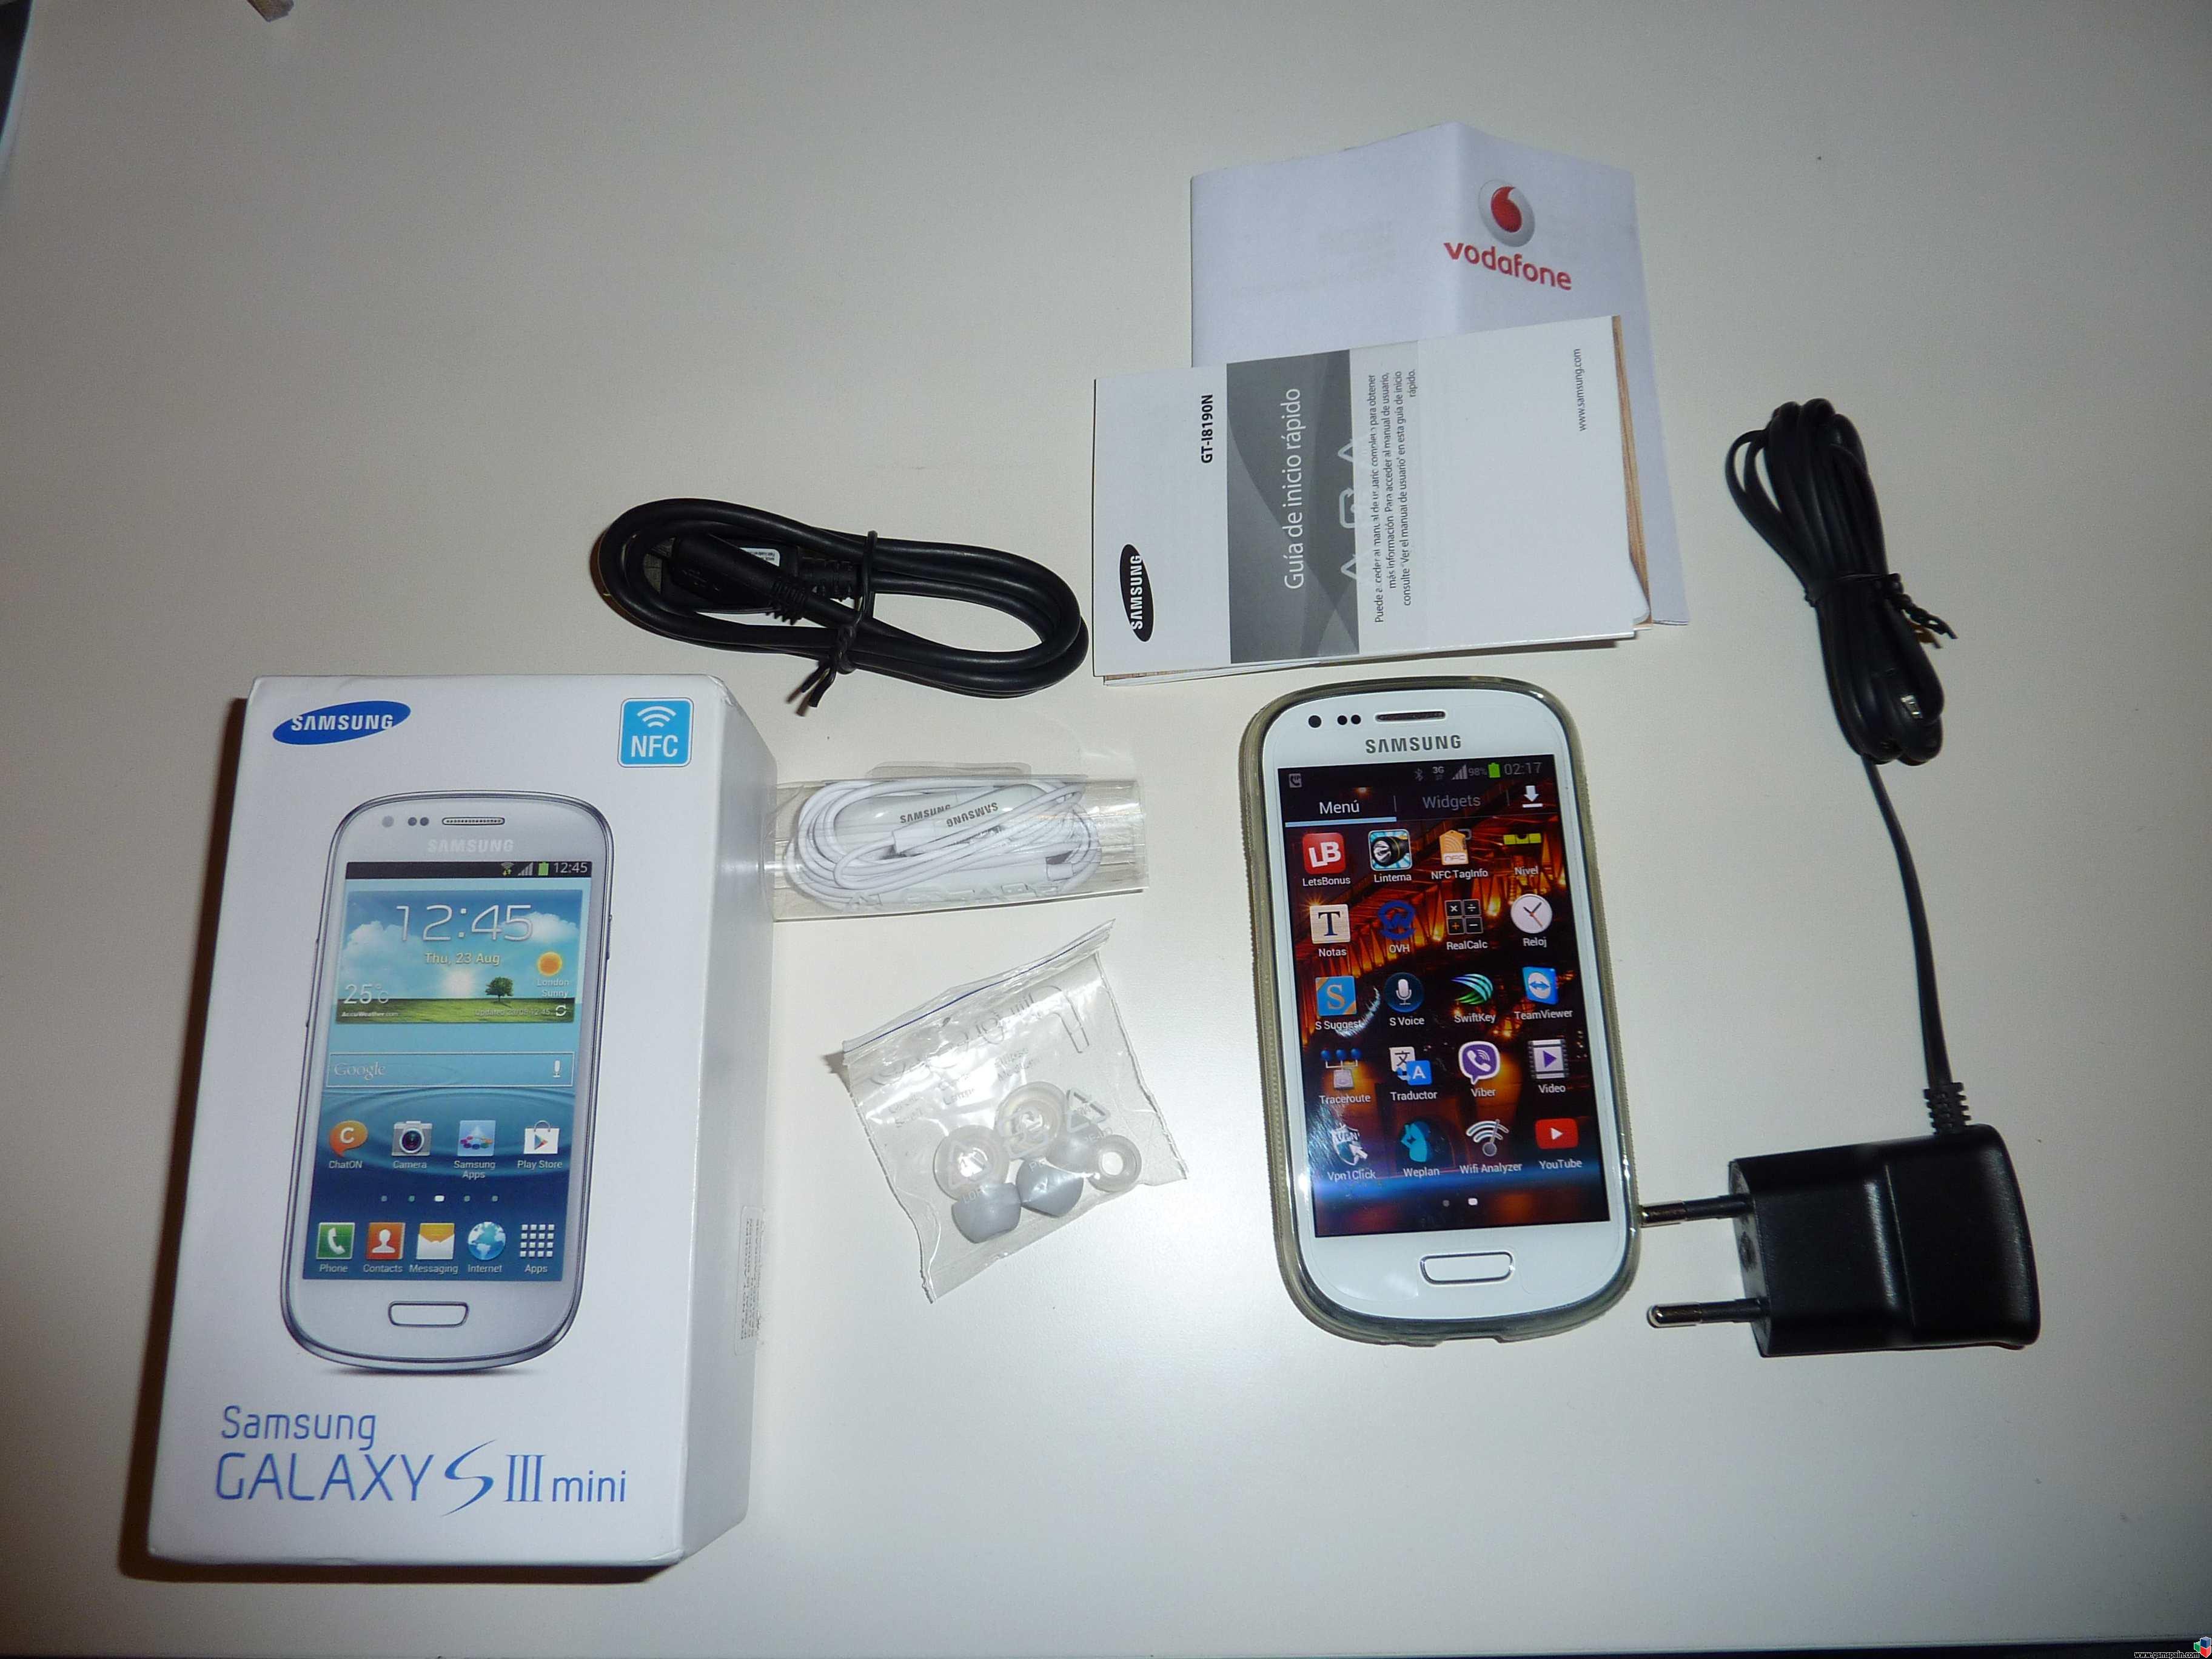 [VENDO] Samsung Galaxy S3 Mini NFC Blanco I8190N 8GB liberado con factura